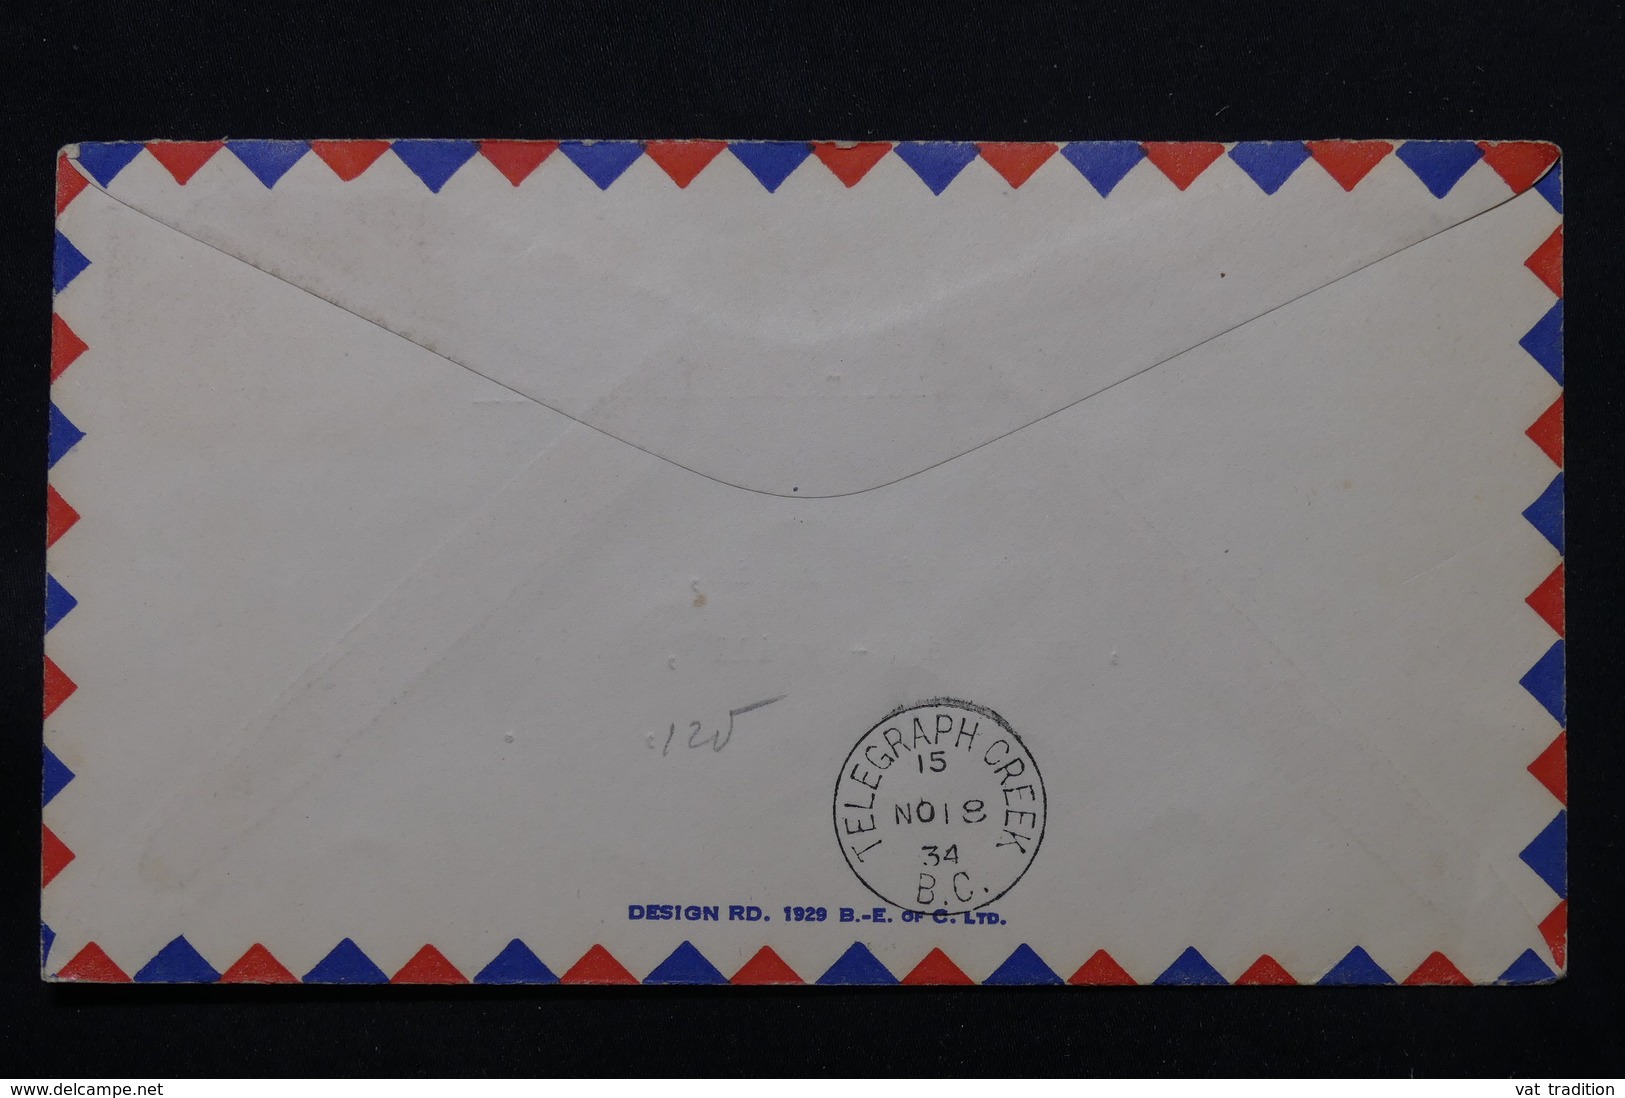 CANADA - Enveloppe Par 1er Vol Atlin / Télégraph Creek En 1934, Affranchissement Et Cachets Plaisants - L 58383 - Primeros Vuelos